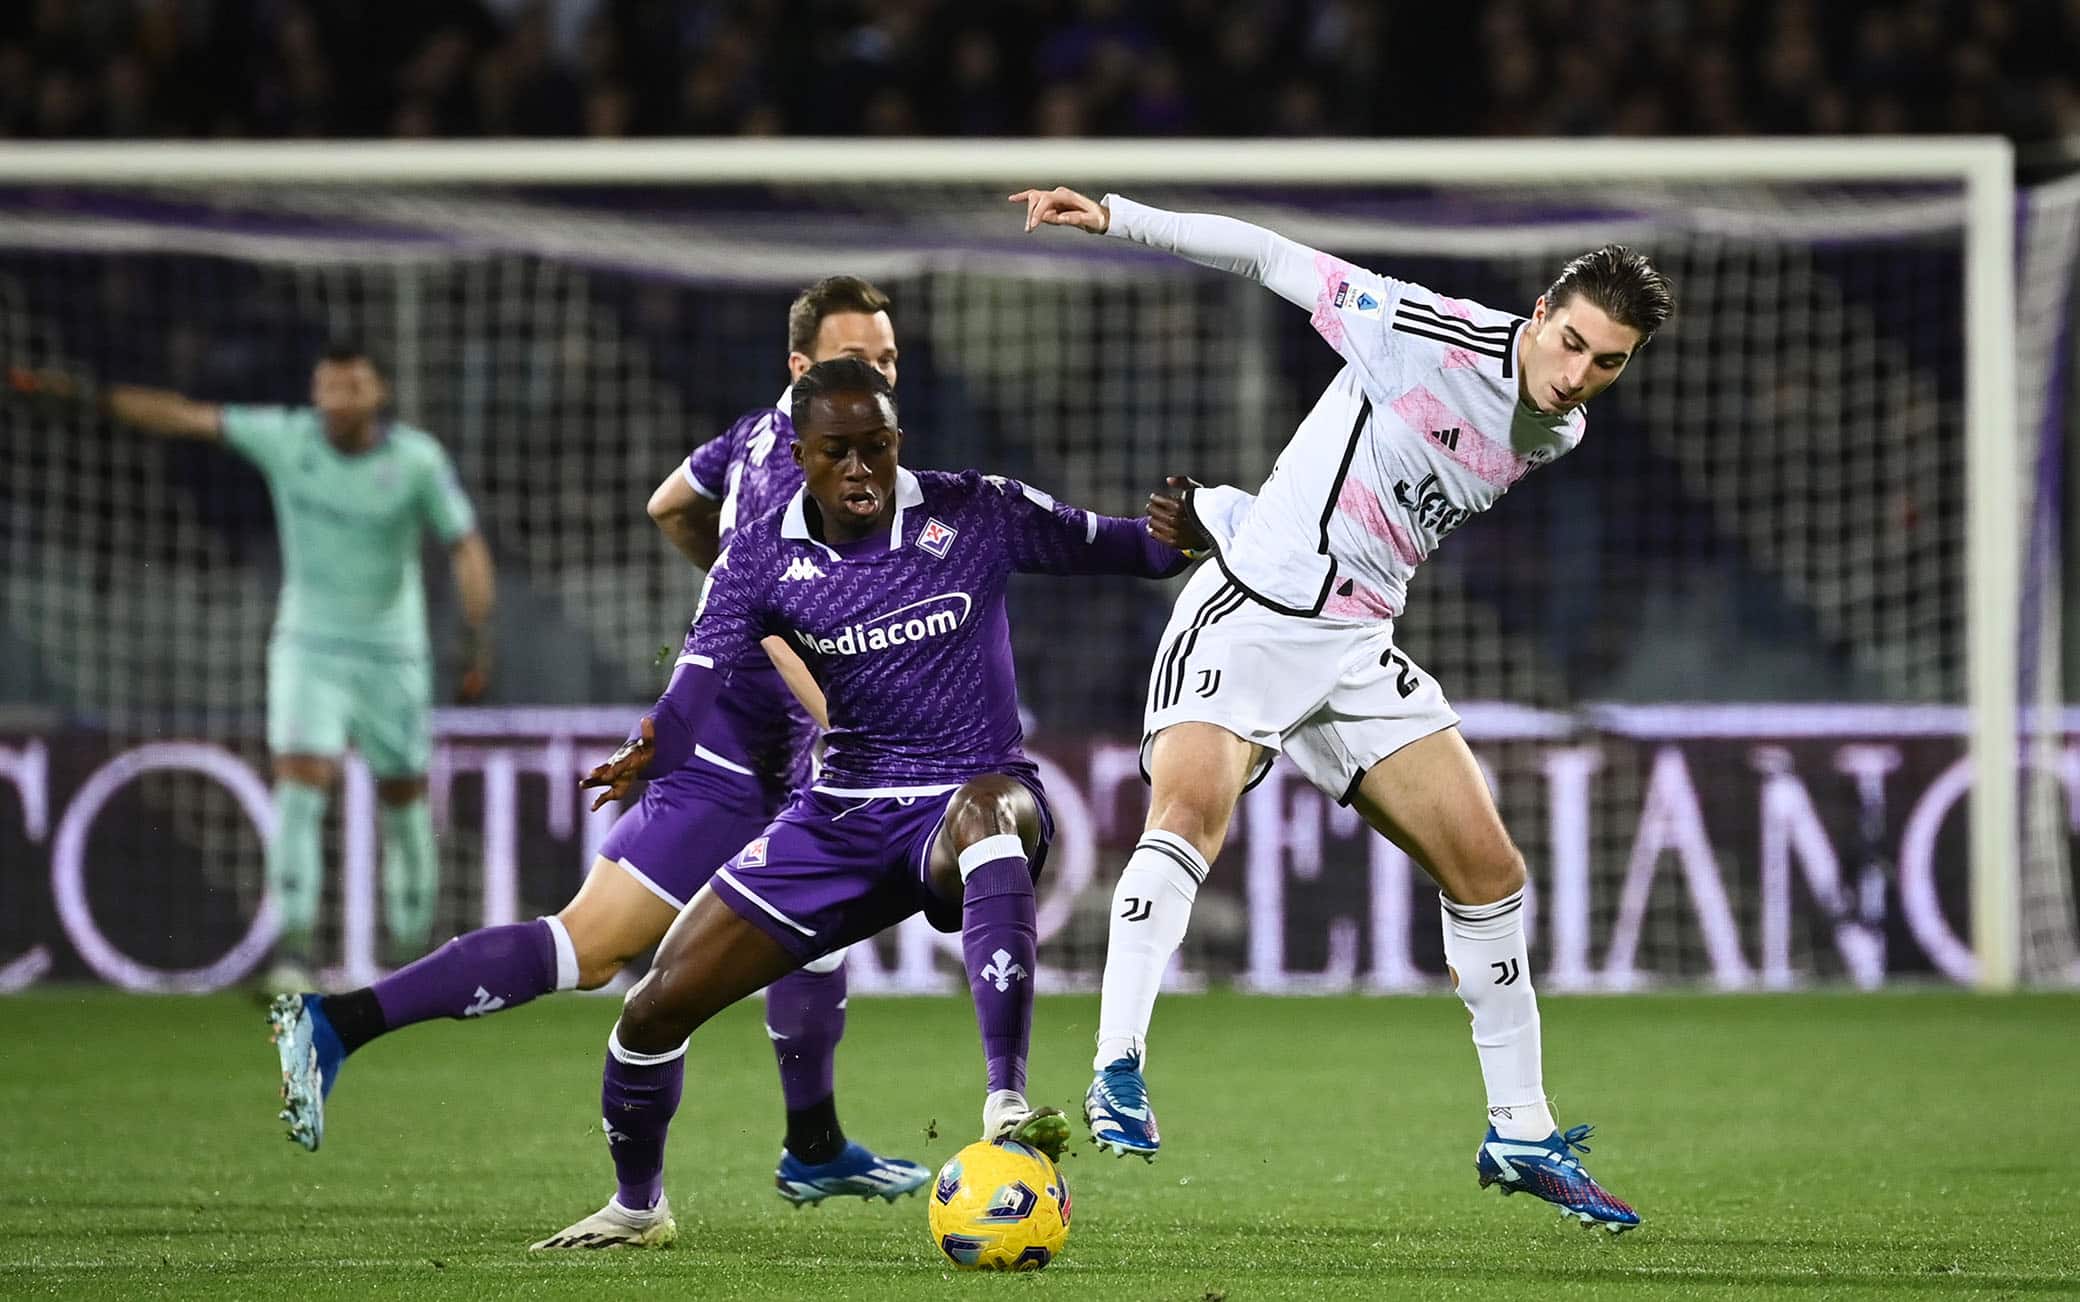 Fiorentina, Juventus